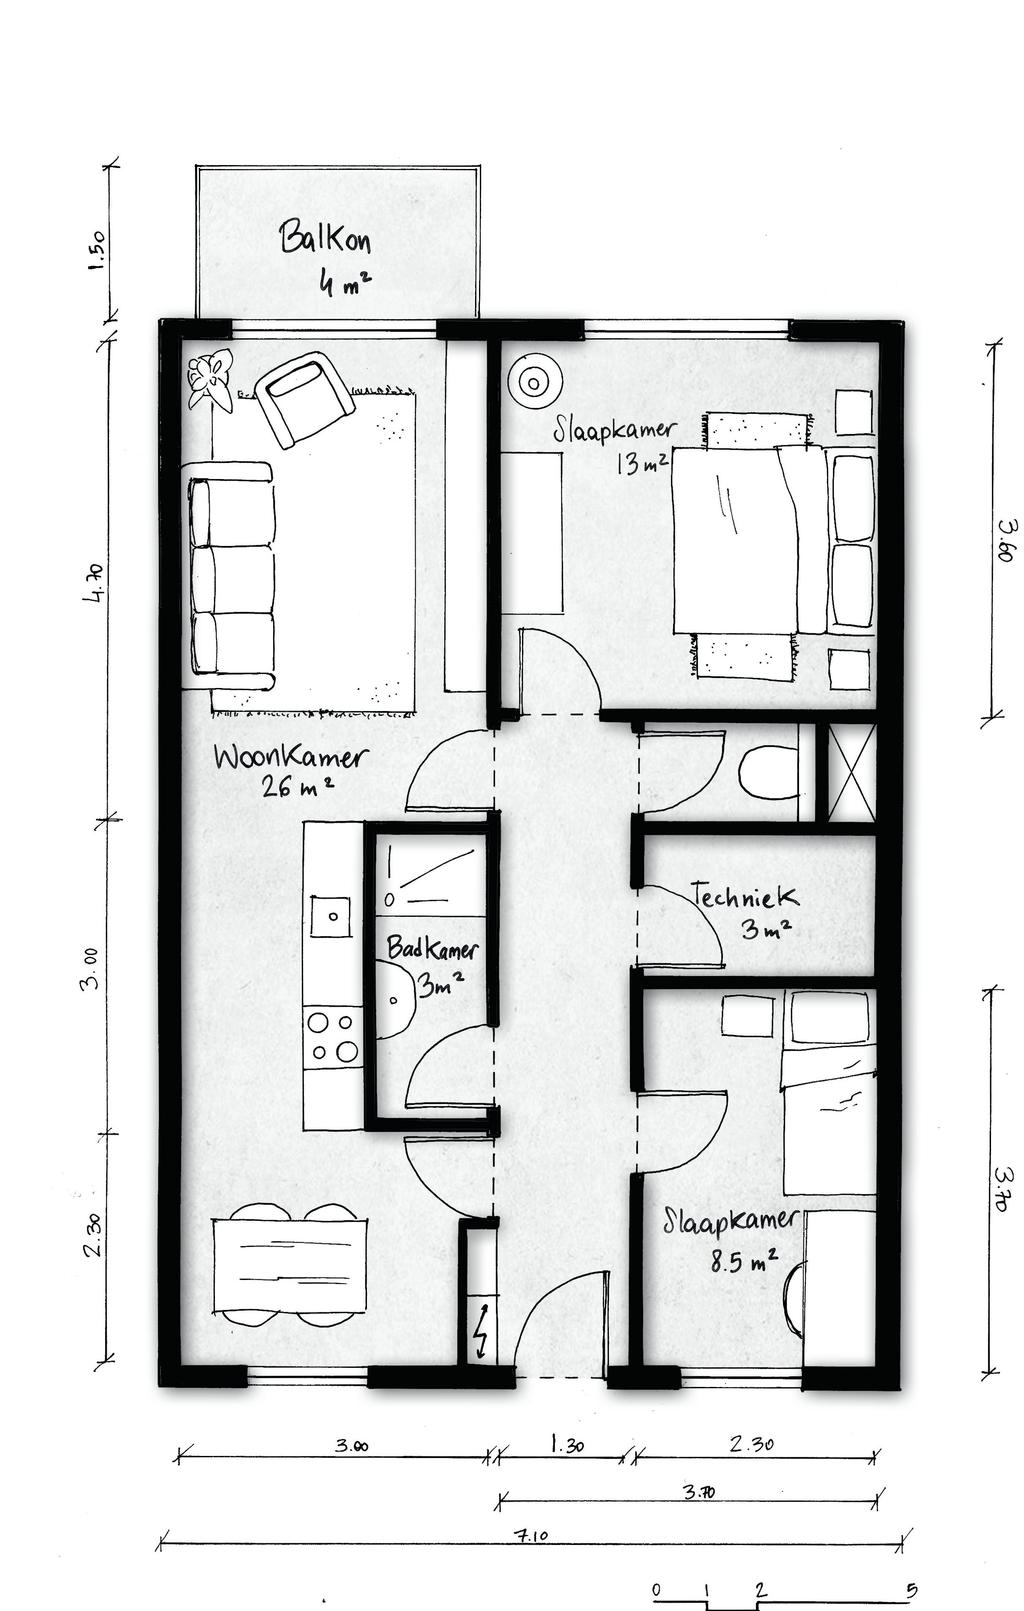 3 kamer appartement Huurprijs indicatie: 607,50-650,- (prijspeil 2019). De appartementen in de U-blokken zijn één meter minder diep.